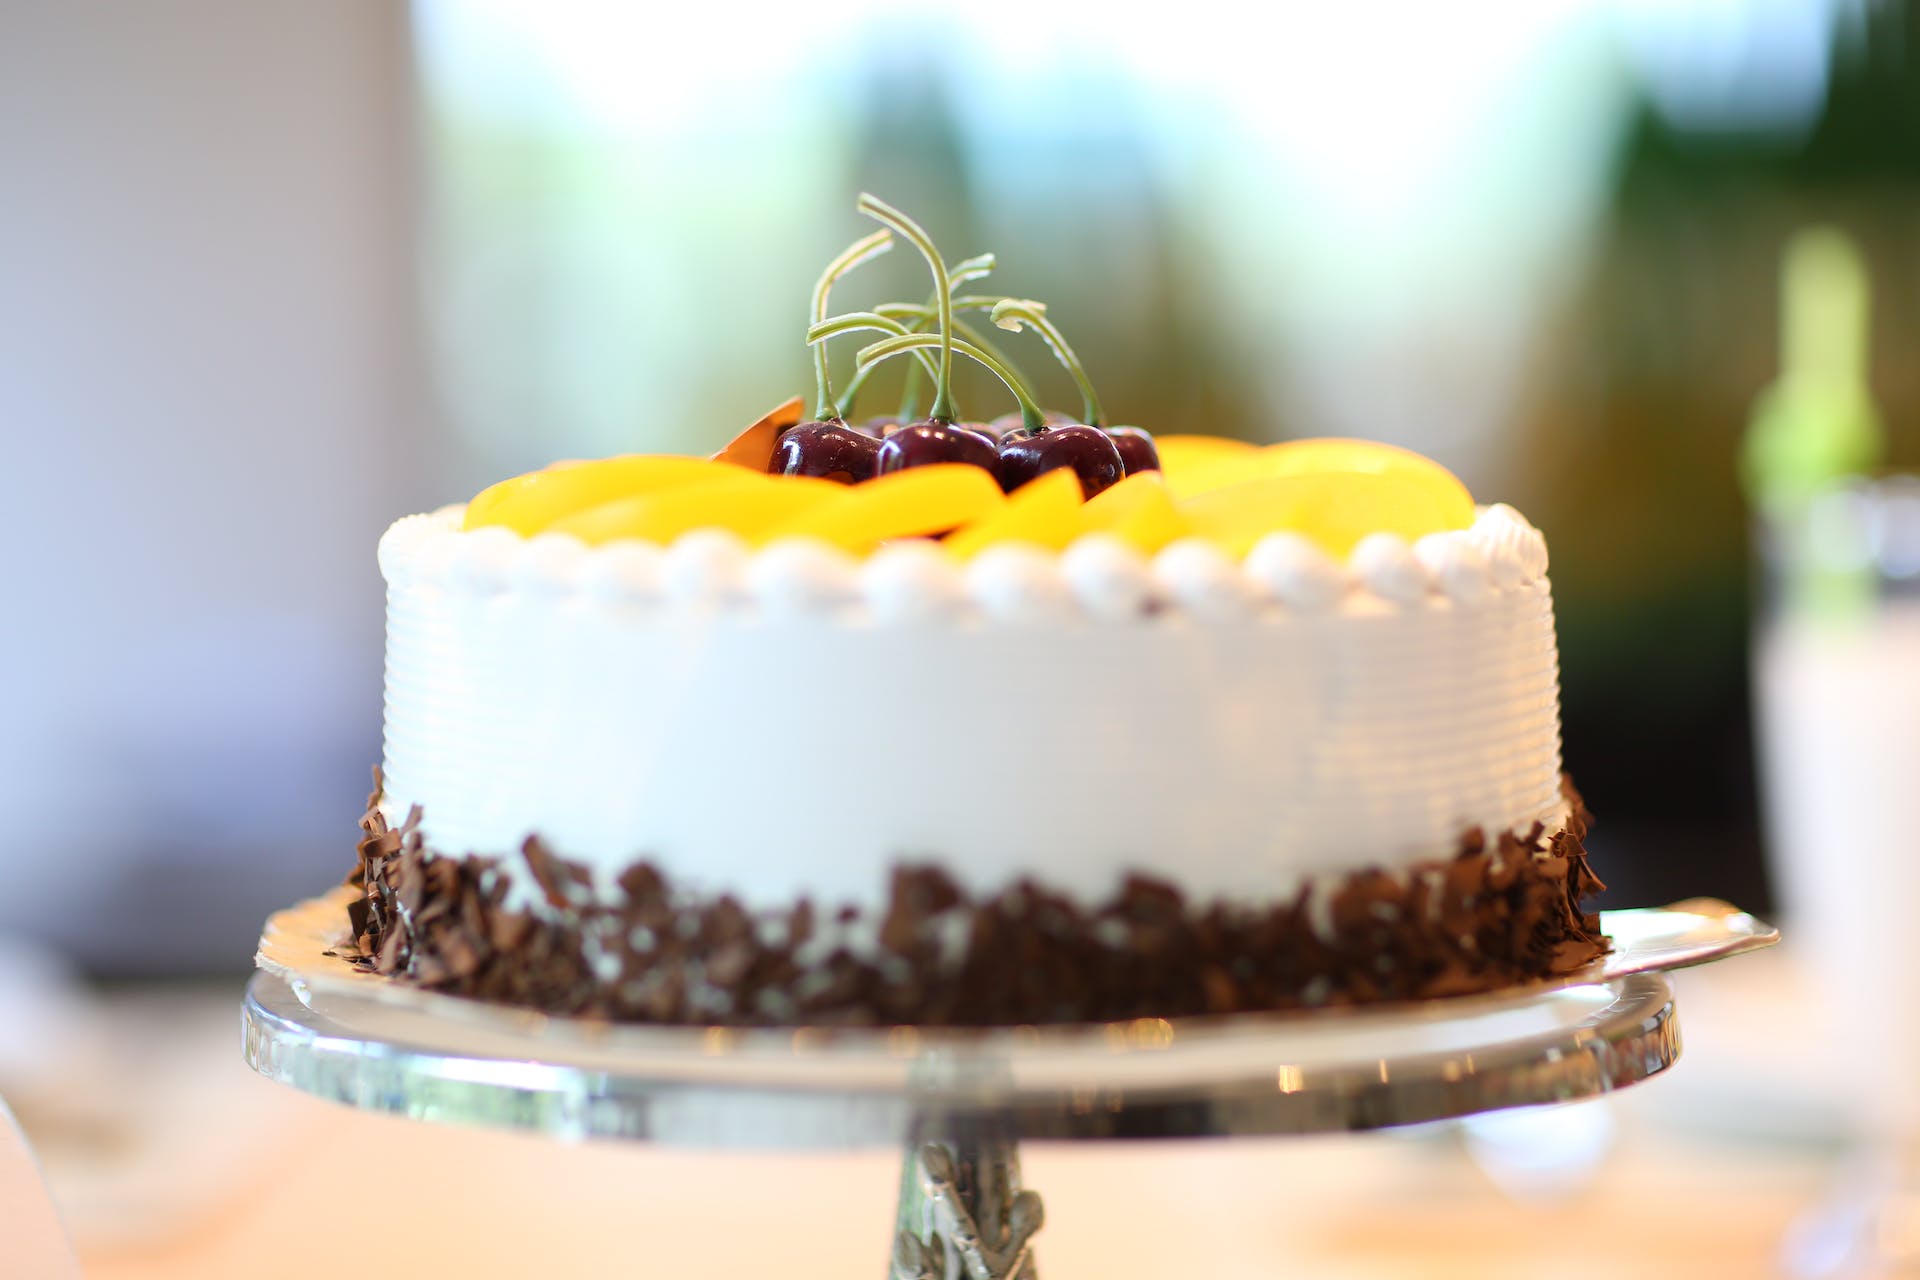 Kuchen mit Früchten gekrönt | Quelle: Pexels